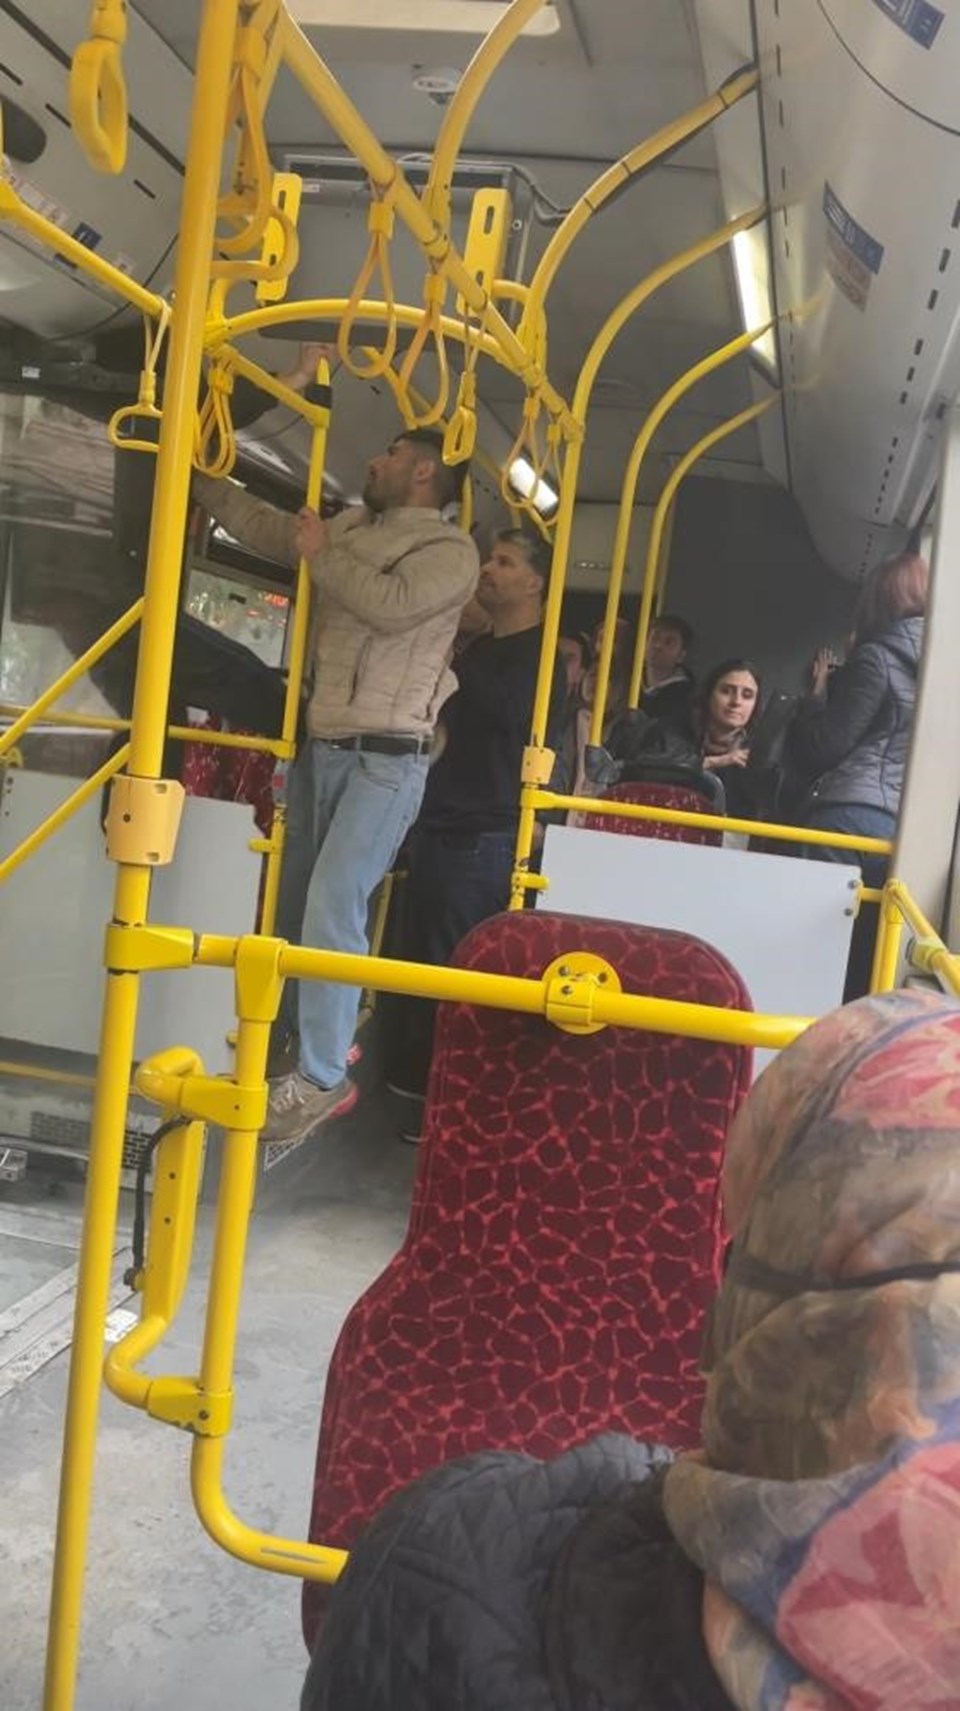 İstanbul’da otobüste olay: “Yanıma kimse oturmasın” deyip olay çıkardı - 1